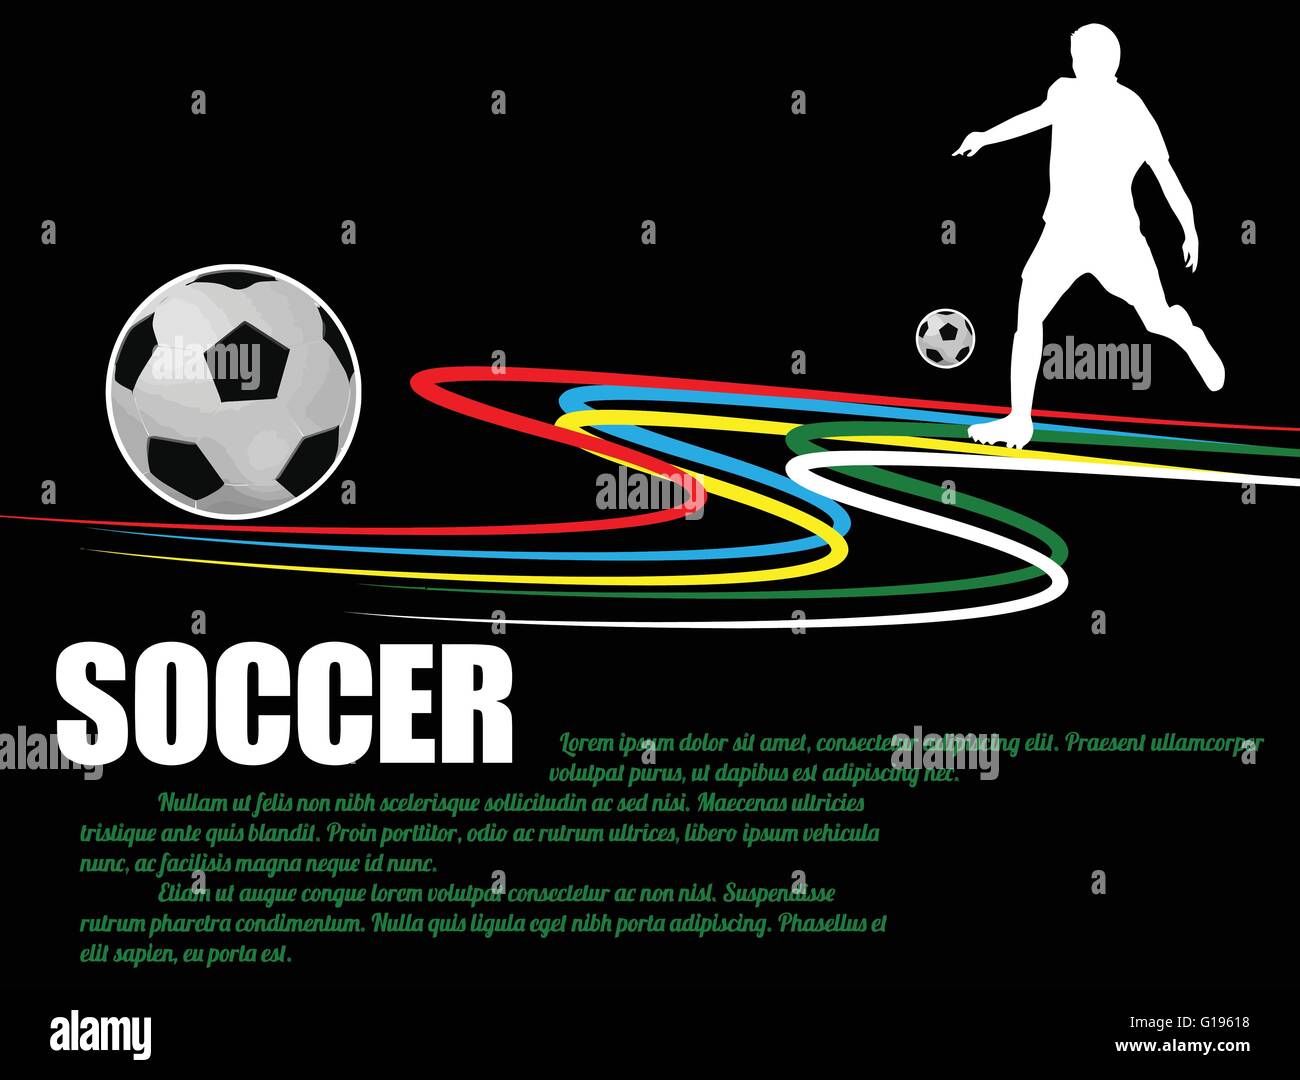 Soccer poster sfondo con i giocatori sulla silhouette nera, illustrazione vettoriale Illustrazione Vettoriale